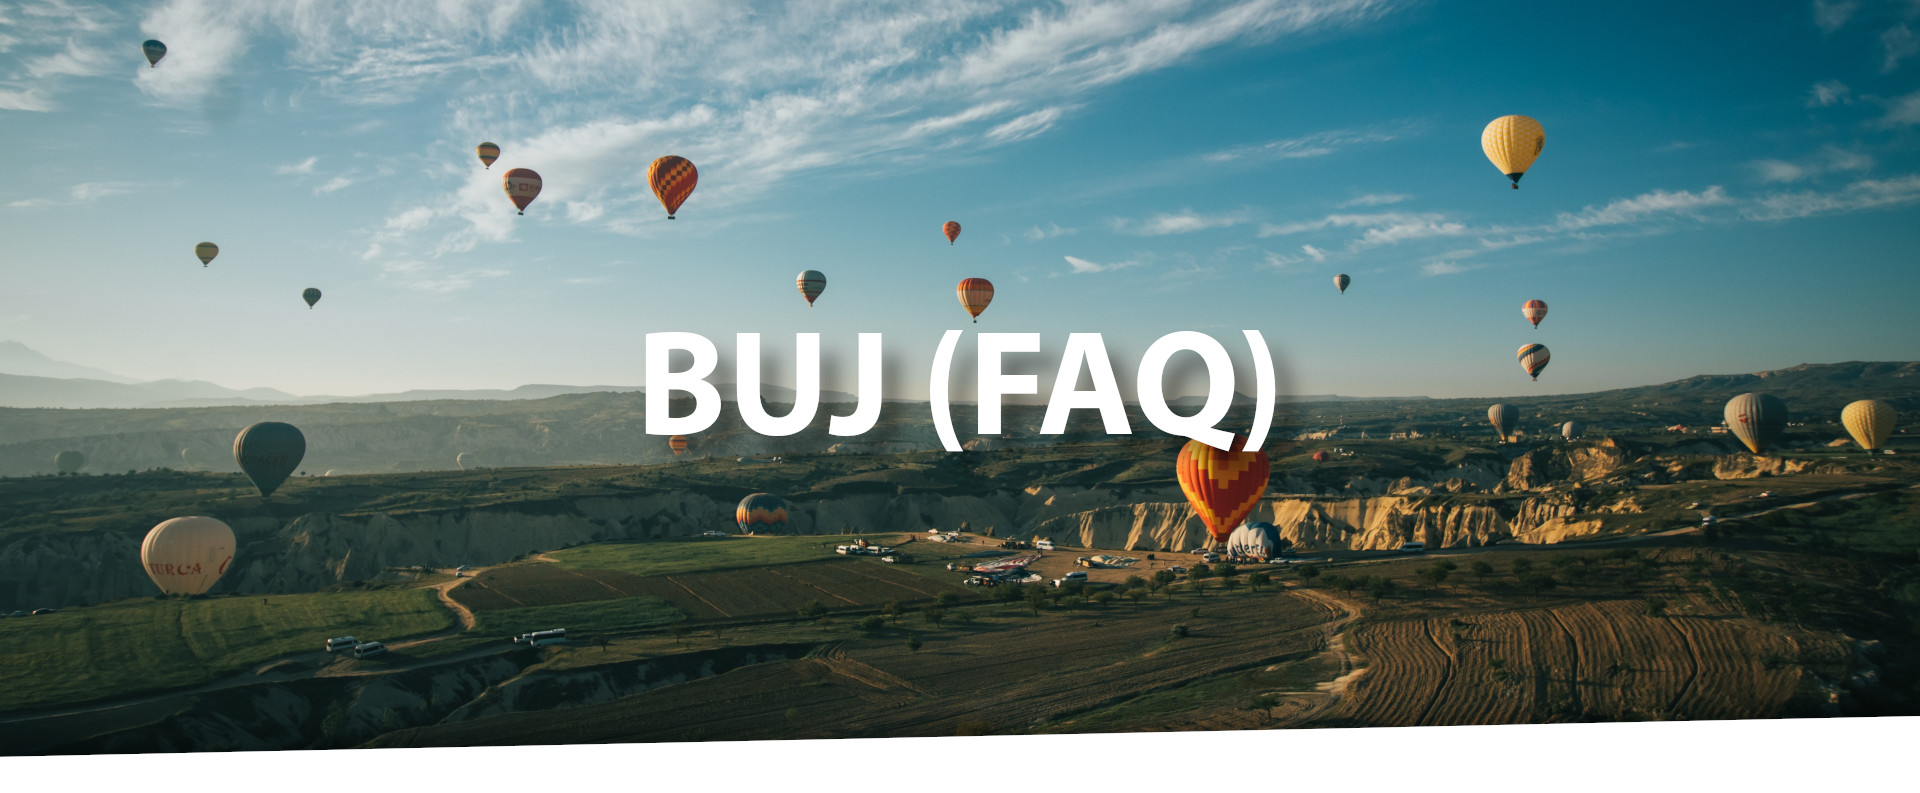 BUJ (FAQ)